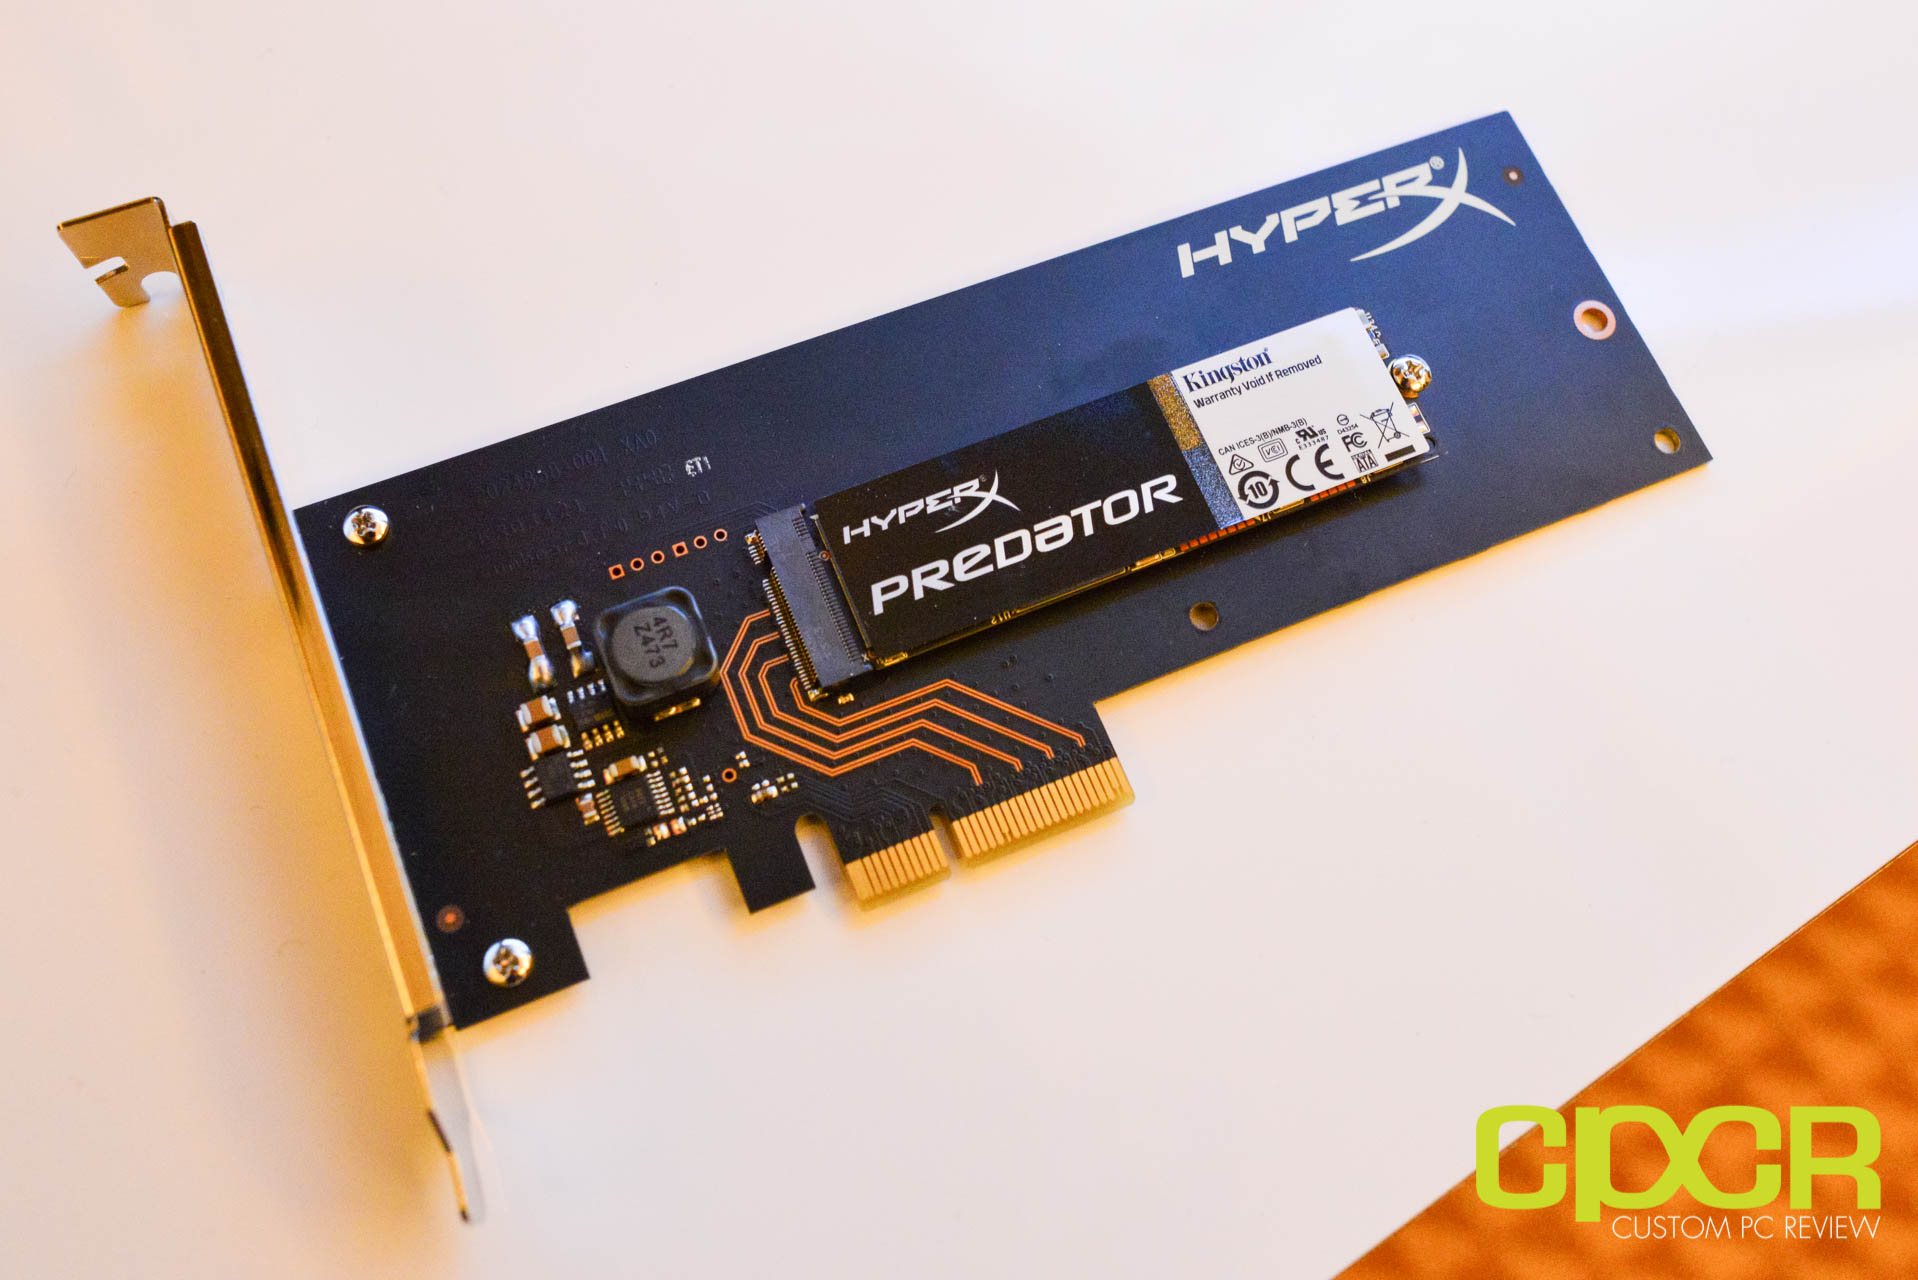 CES 2015: Kingston’s HyperX Predator M.2 PCIe SSD, HyperX Savage SATA SSD